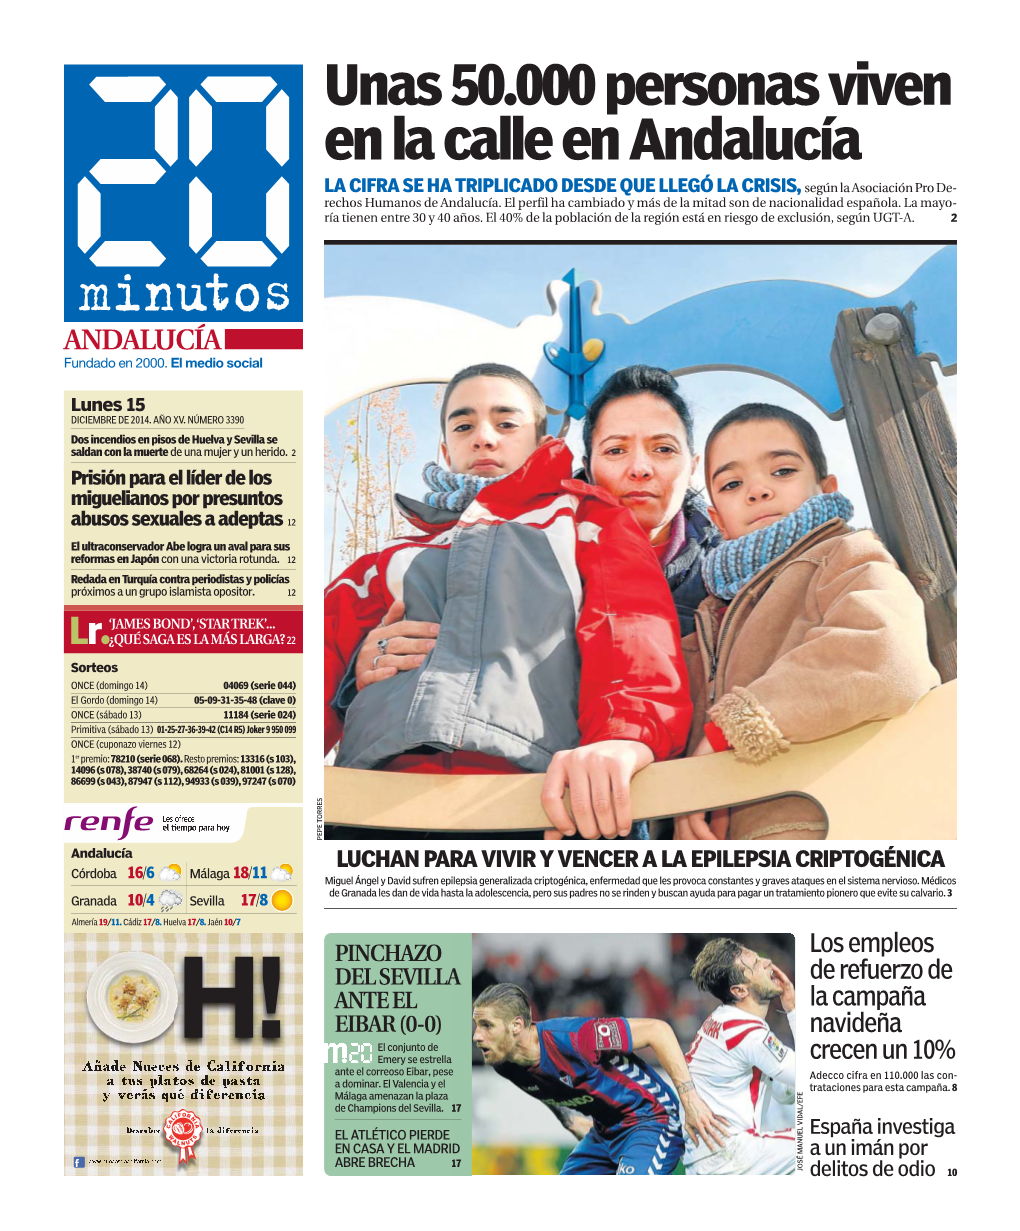 Unas 50.000 Personas Viven En La Calle En Andalucía LA CIFRA SE HA TRIPLICADO DESDE QUE LLEGÓ LA CRISIS, Según La Asociación Pro De- Rechos Humanos De Andalucía